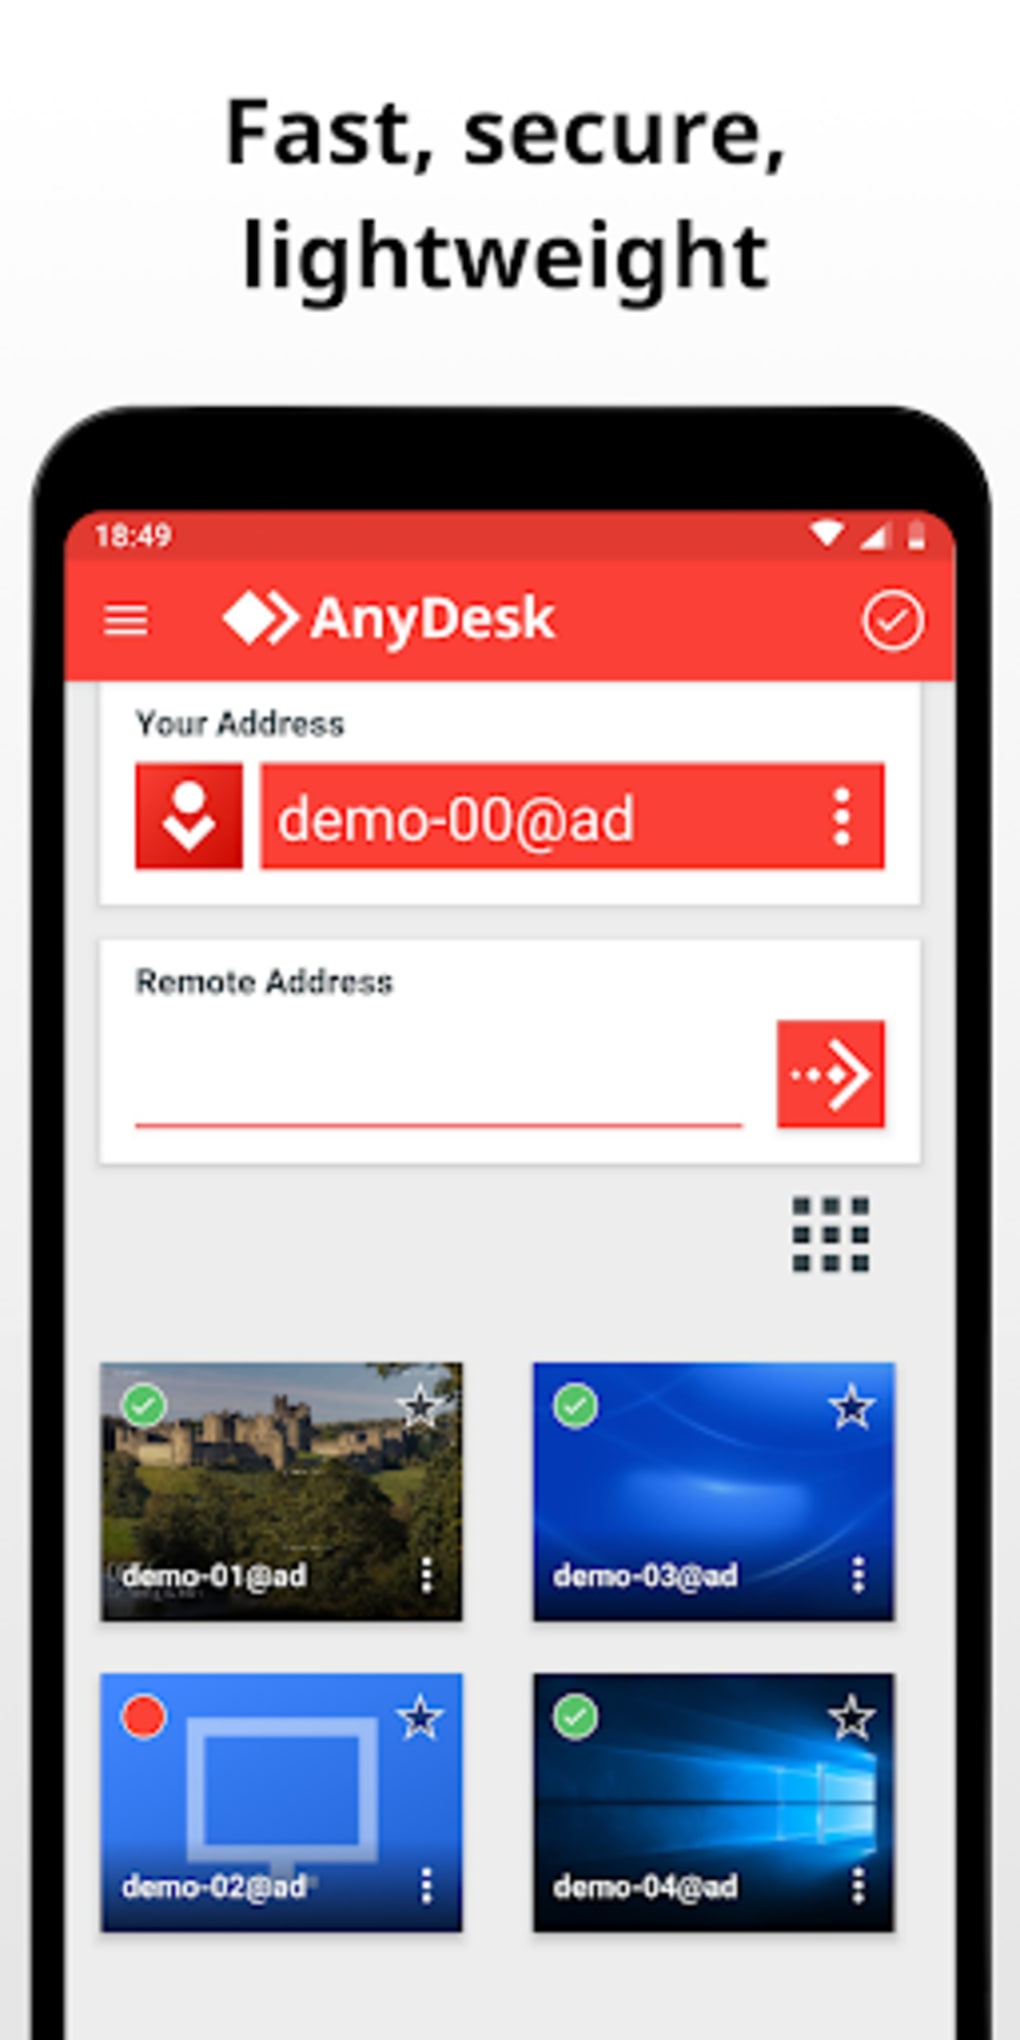 anydesk remote app download